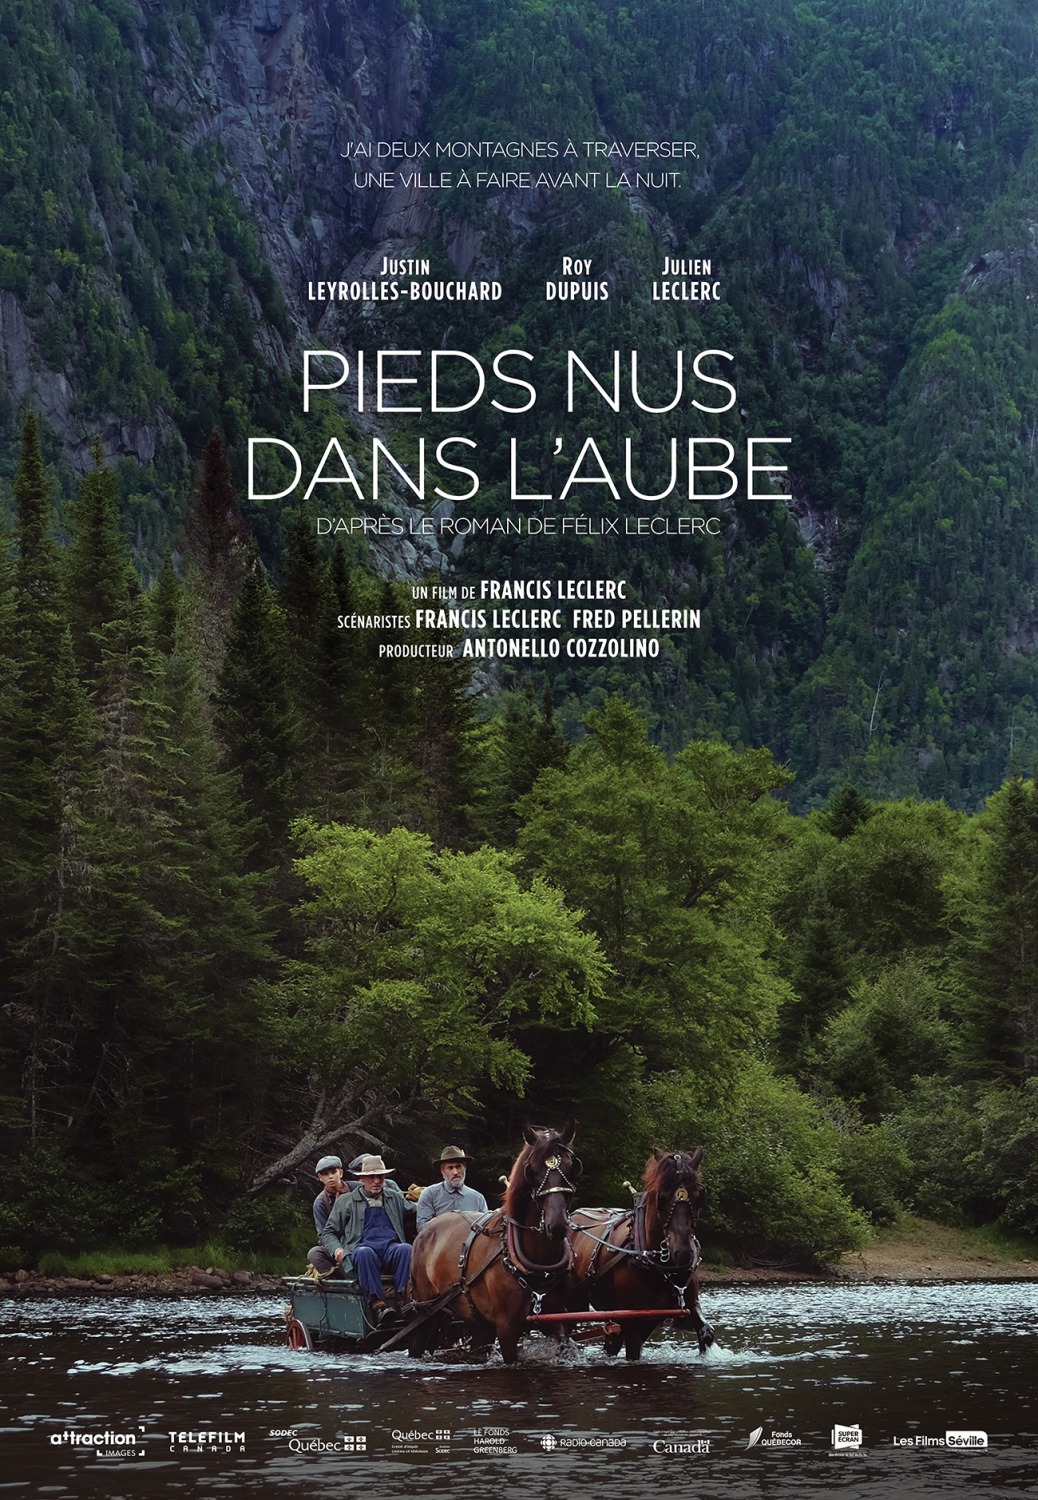 Pieds nus dans l'aube (#3 of 4): Extra Large Movie Poster Image - IMP ...